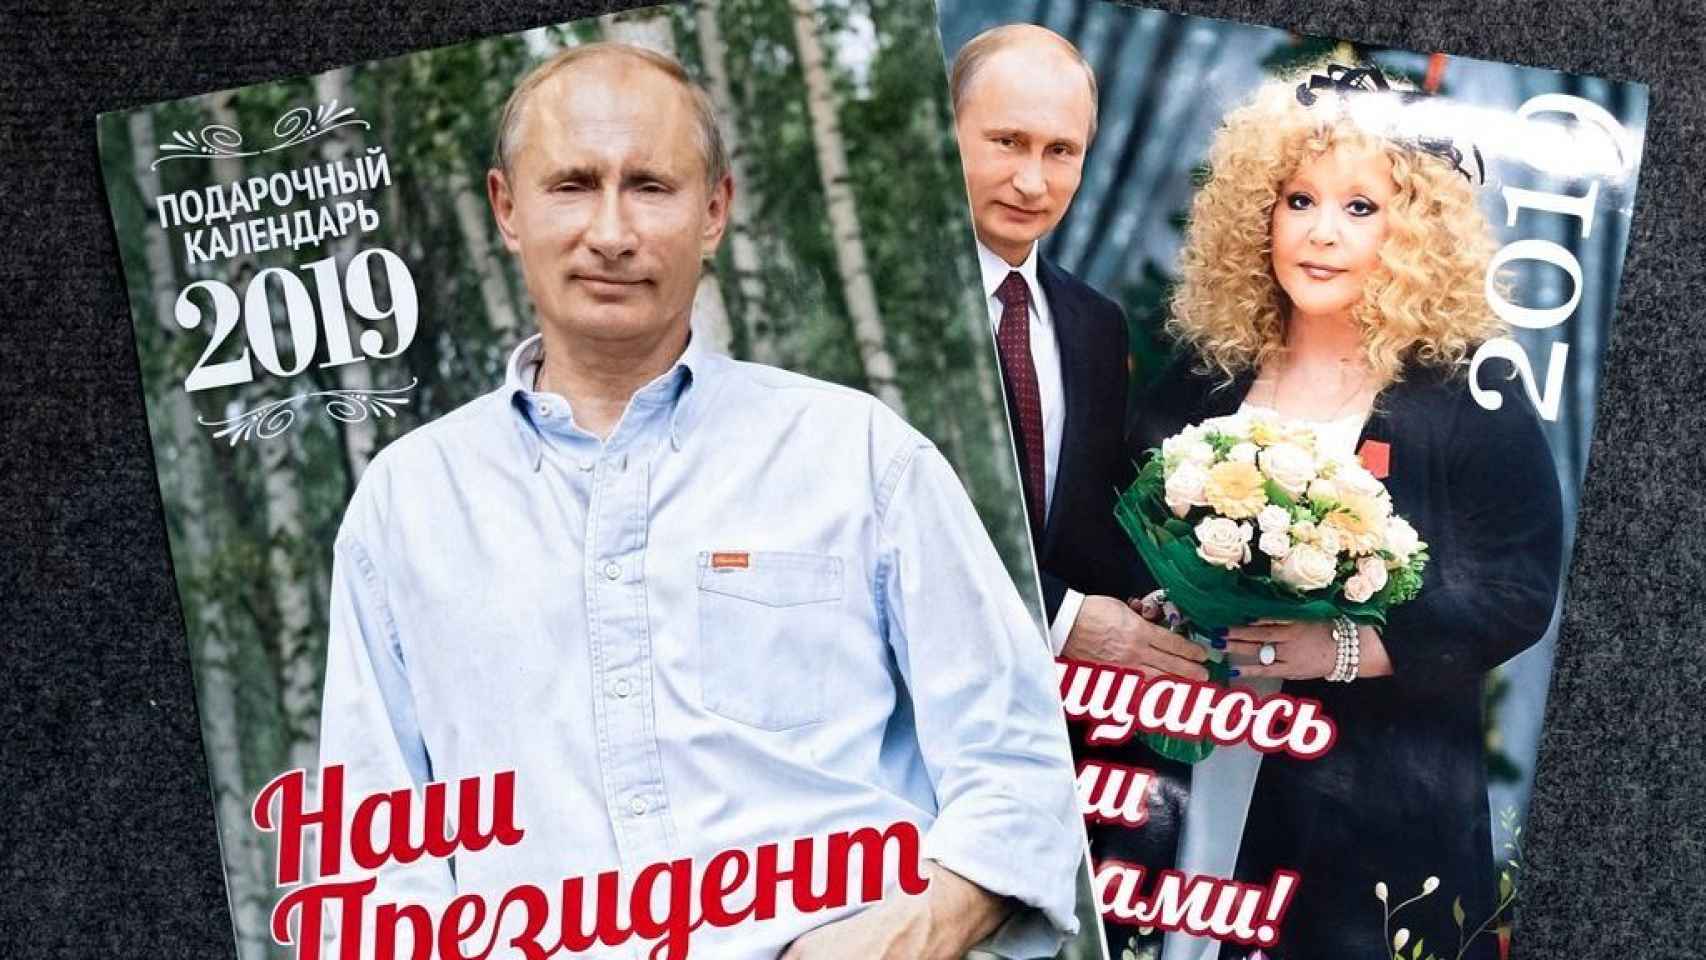 Sale a la venta el nuevo calendario de Vladimir Putin para 2019.